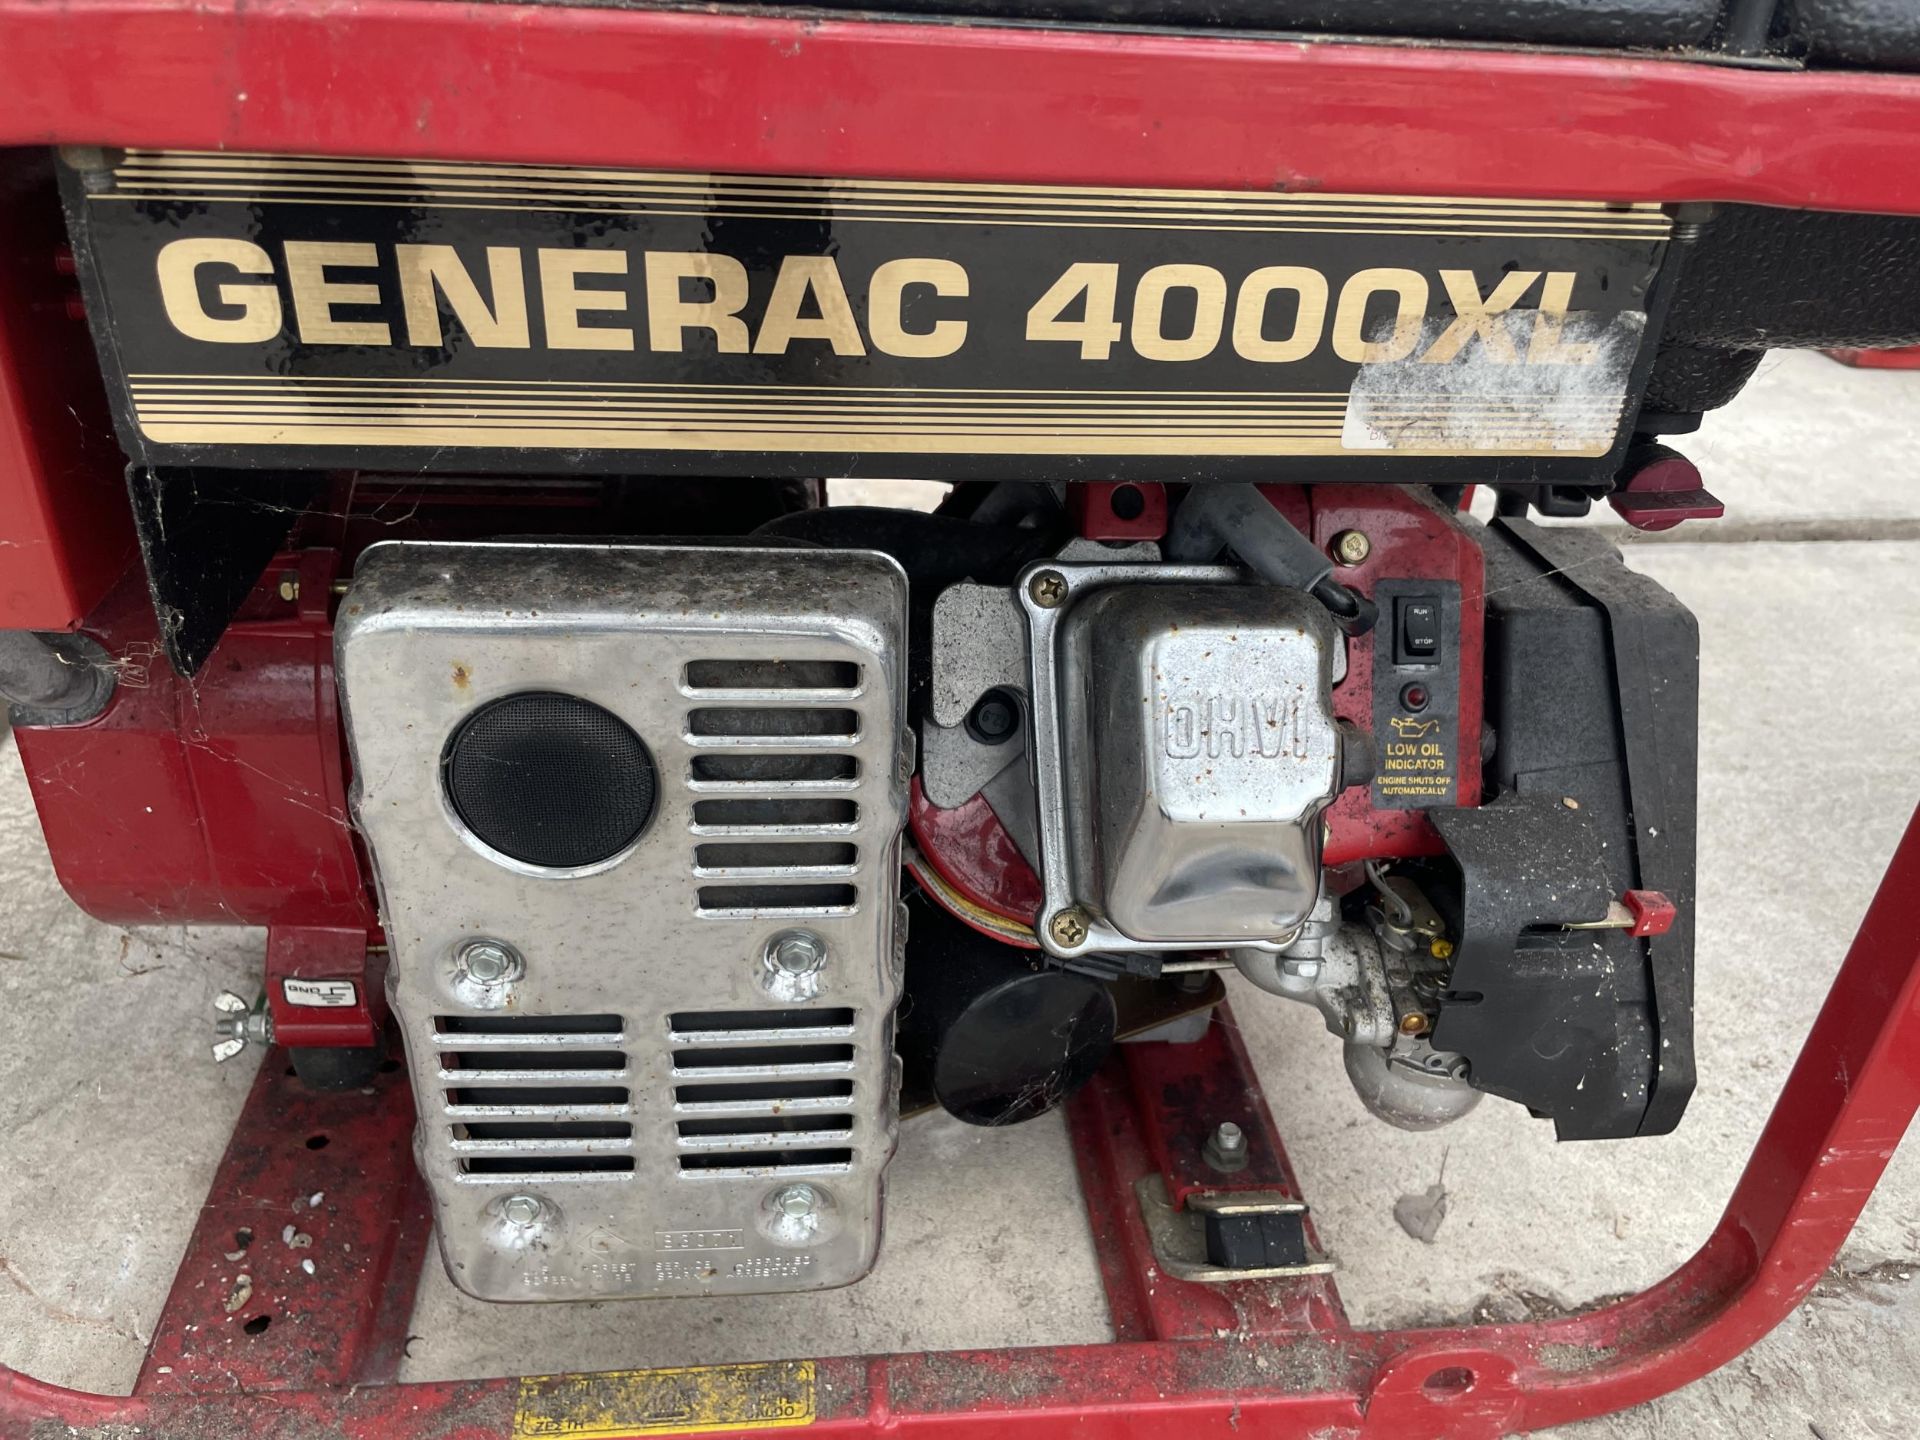 A GENERAC 4000XL PETROL GENERATOR - Image 2 of 3